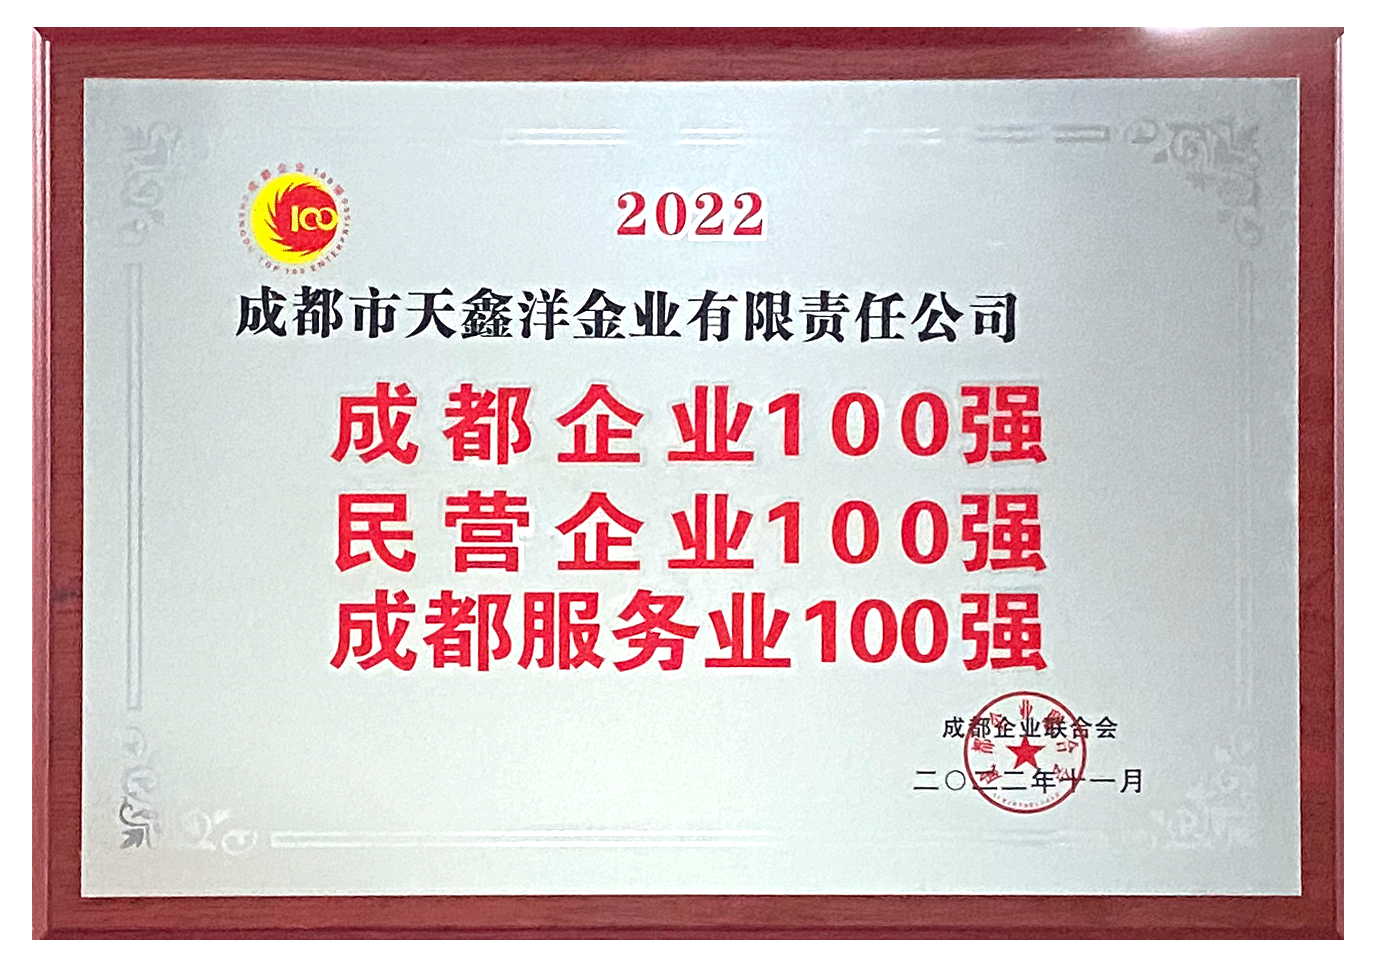 天鑫洋连续五年获评“成都企业100强”